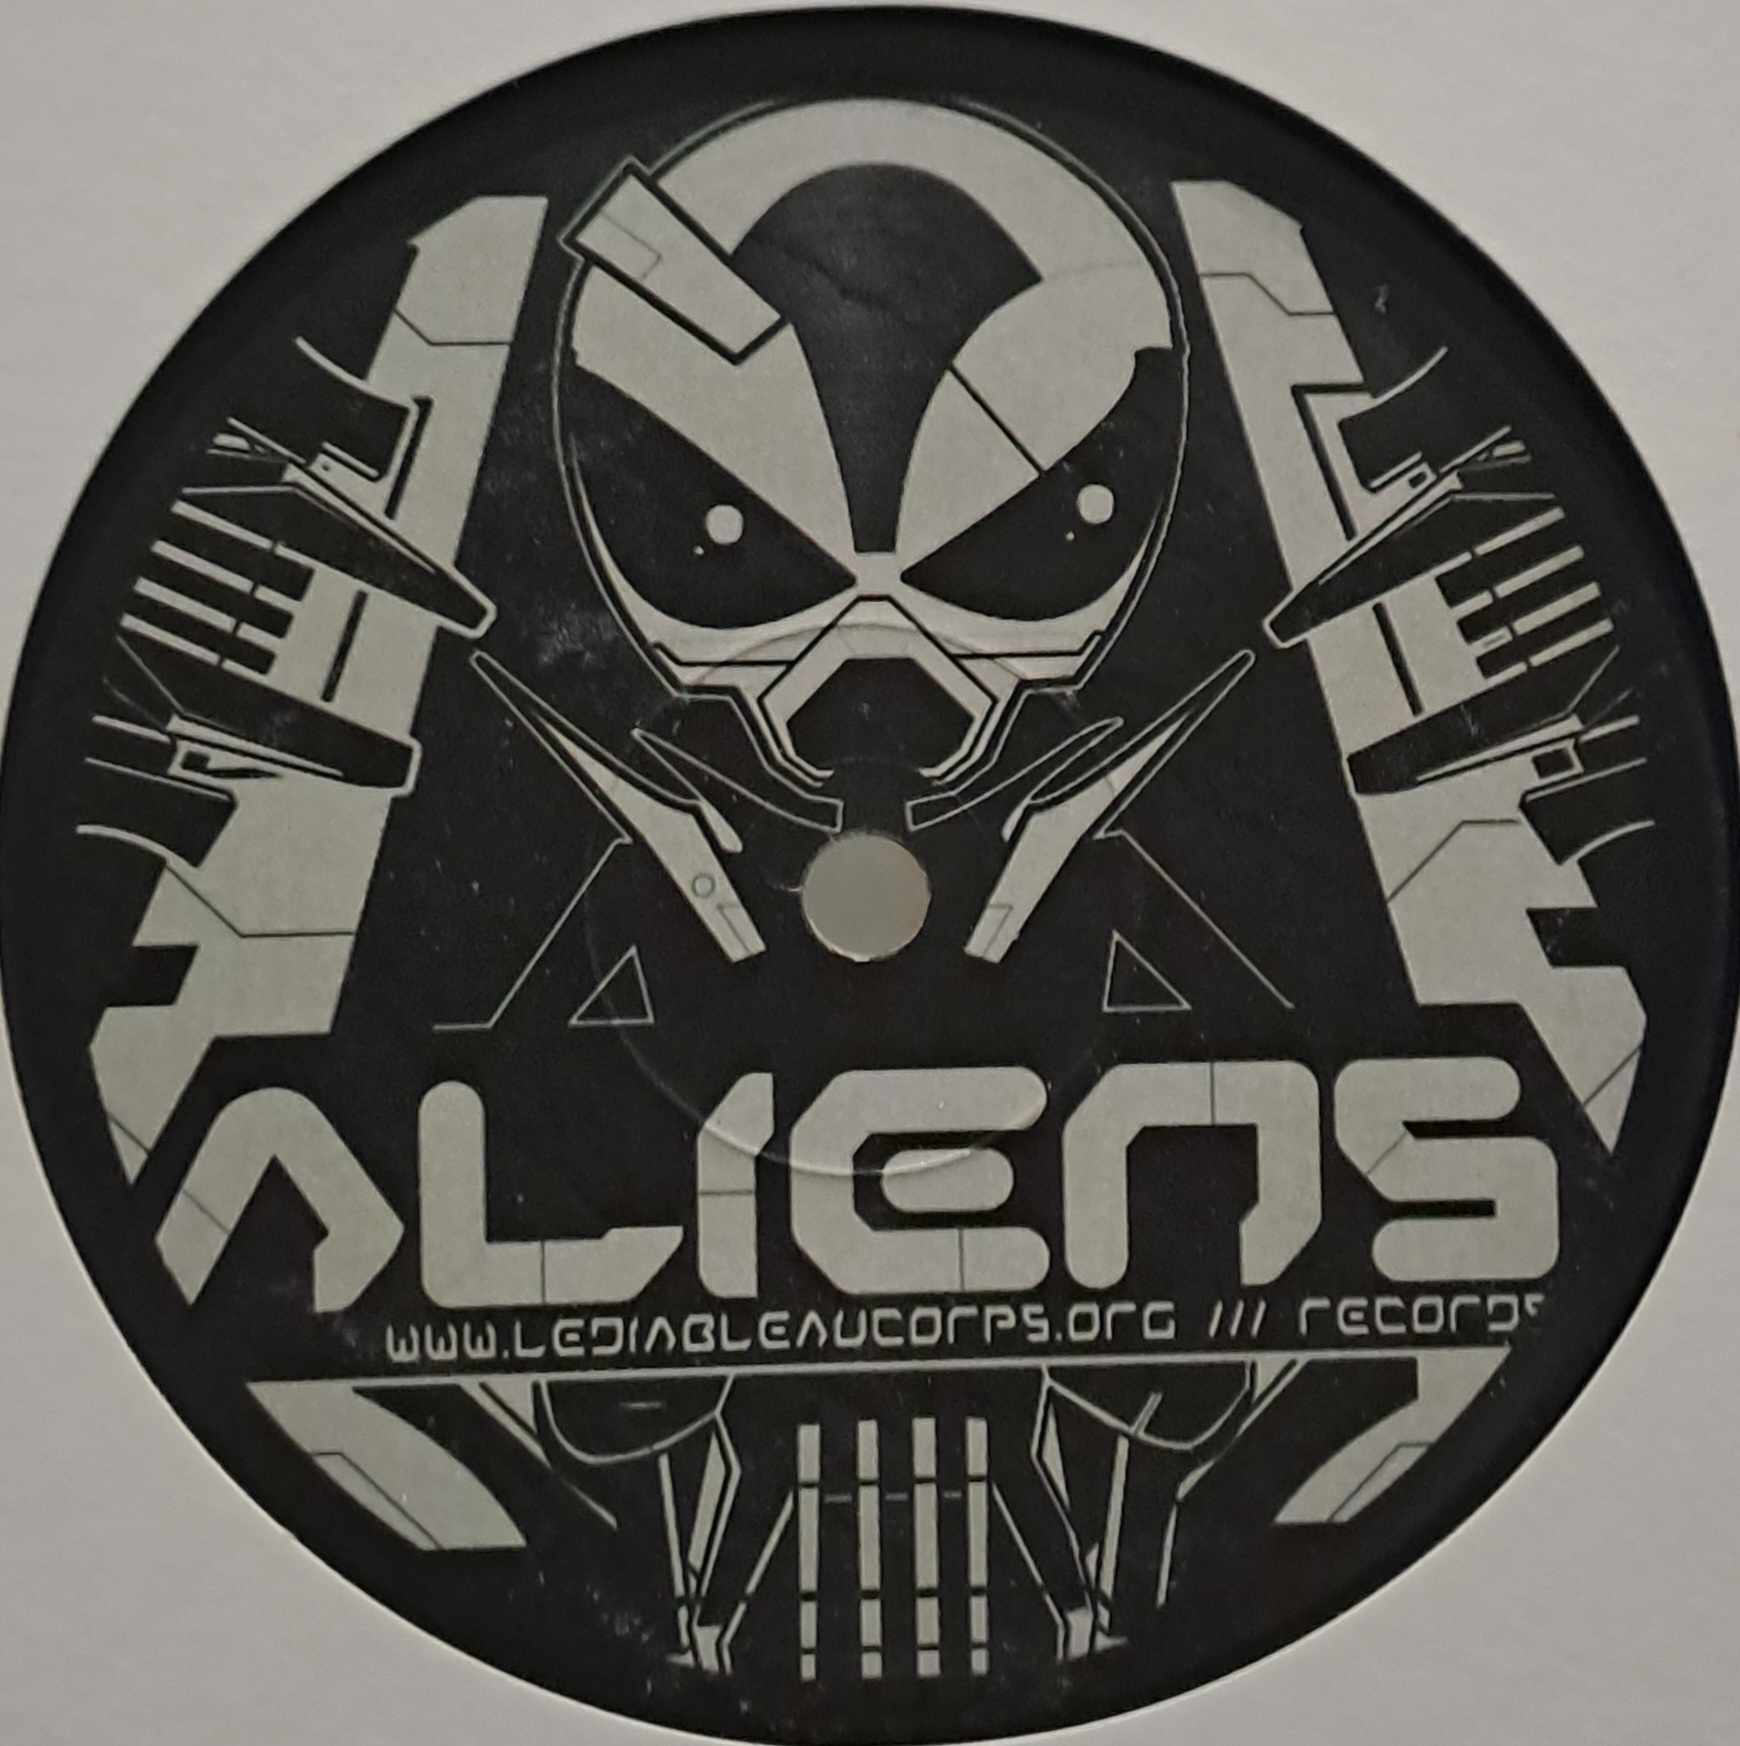 Aliens 01 (original) - vinyle freetekno